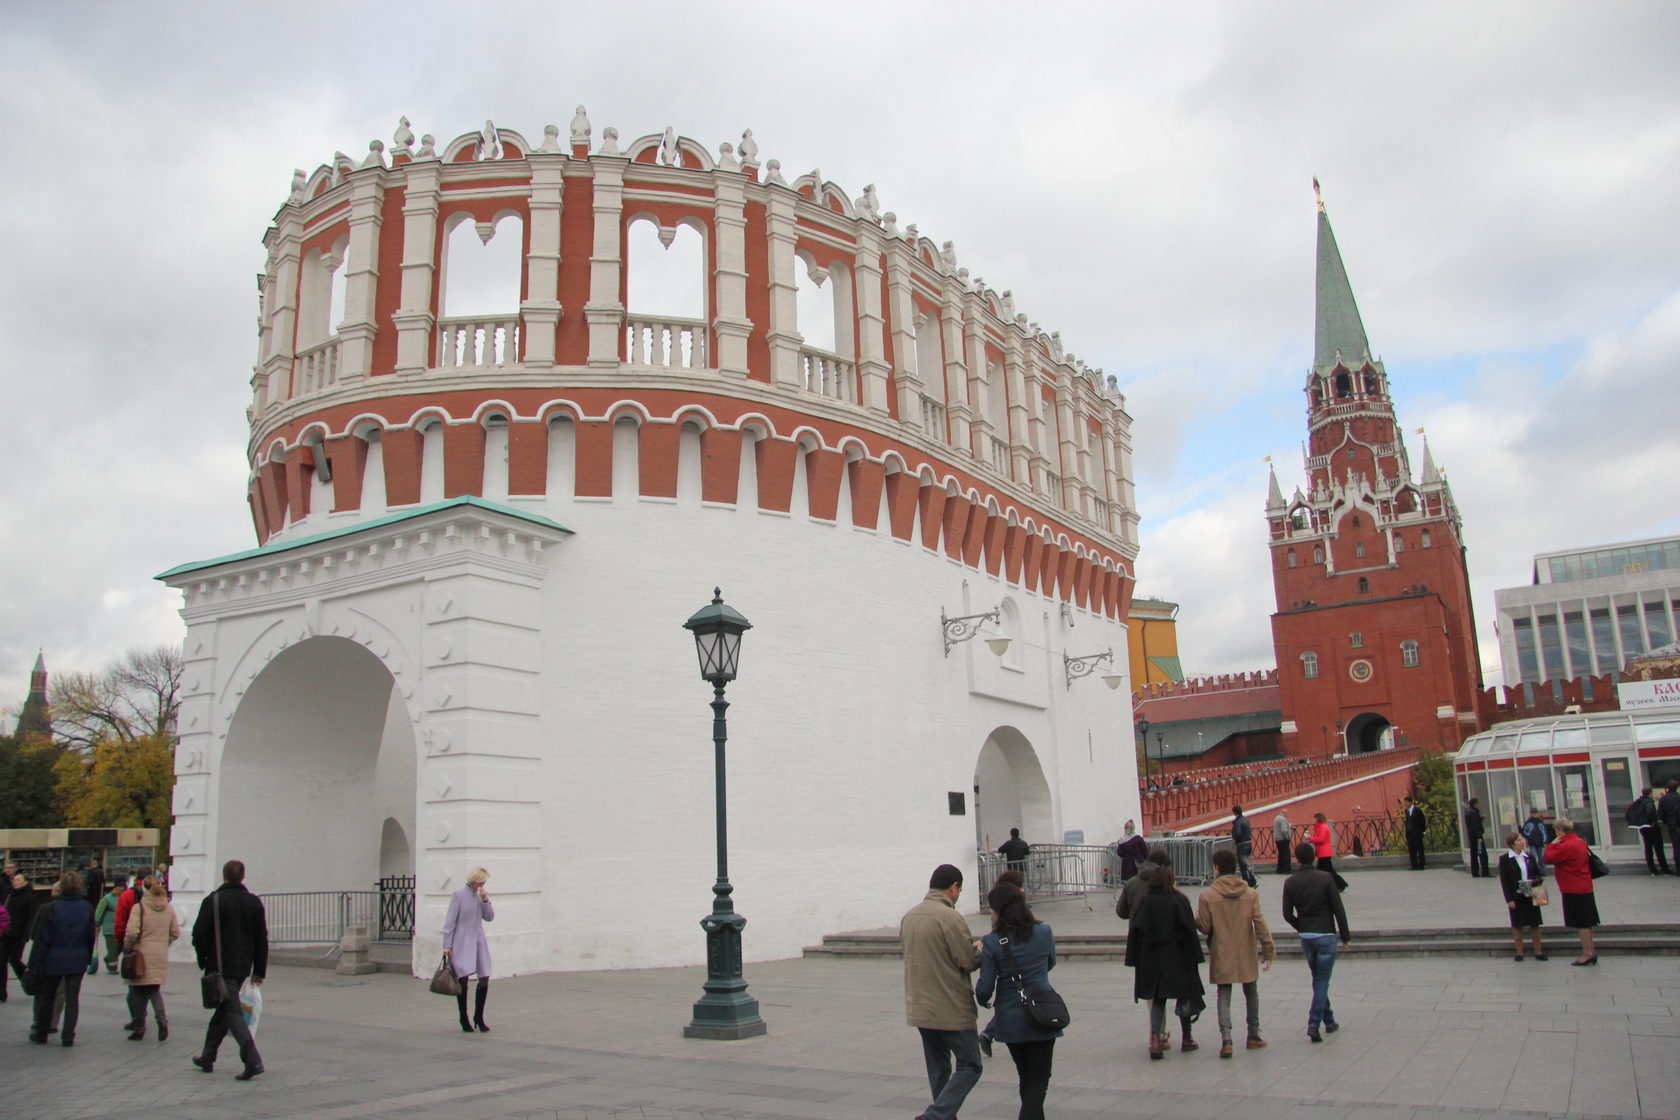 кремль из белого камня в москве